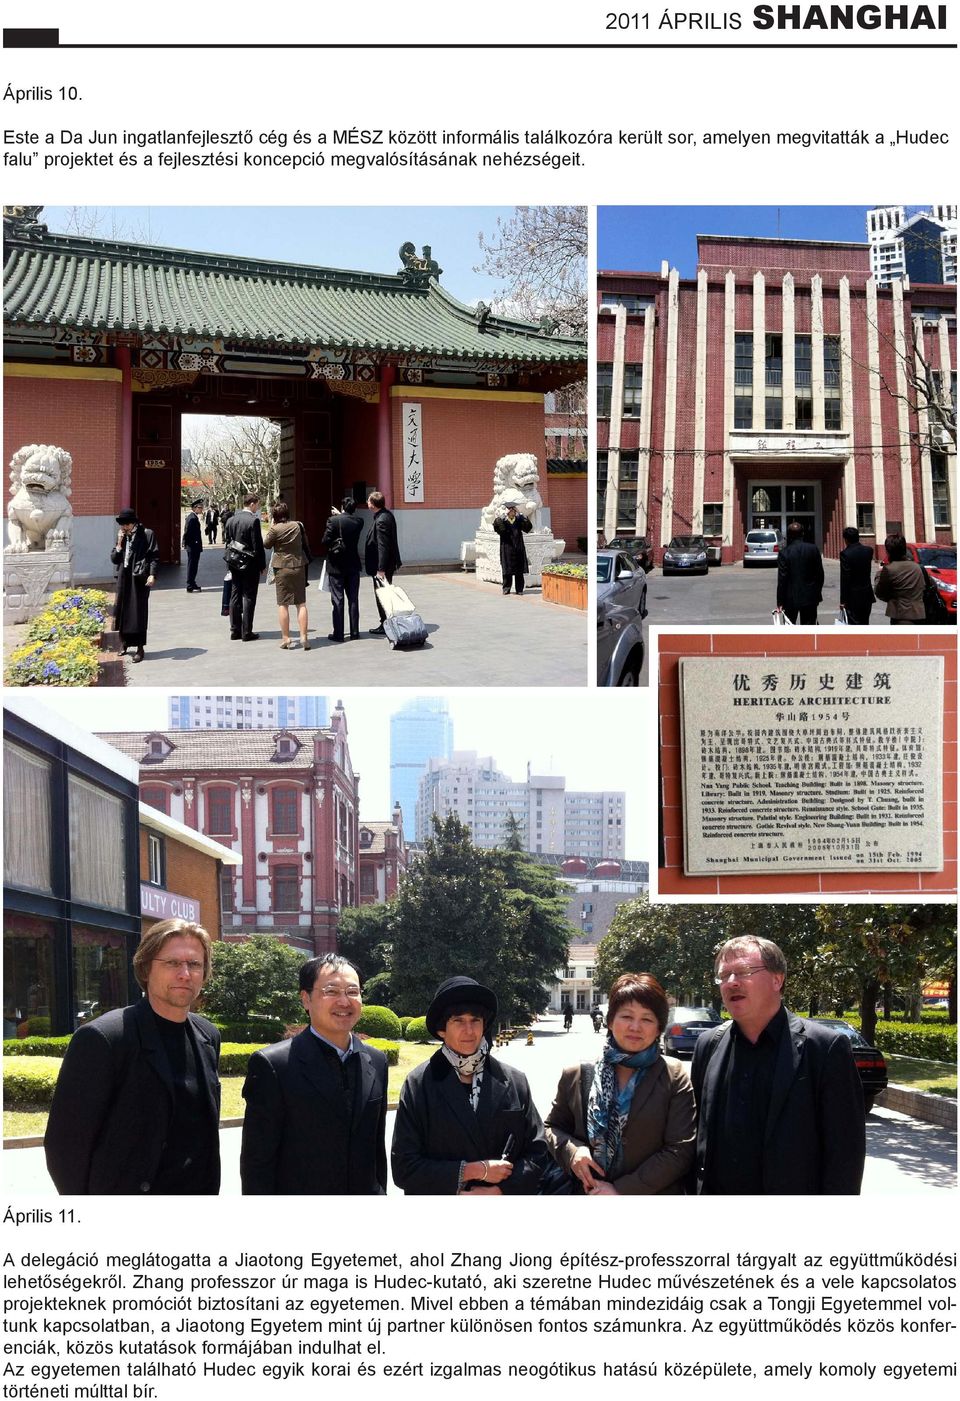 Zhang professzor úr maga is Hudec-kutató, aki szeretne Hudec művészetének és a vele kapcsolatos projekteknek promóciót biztosítani az egyetemen.